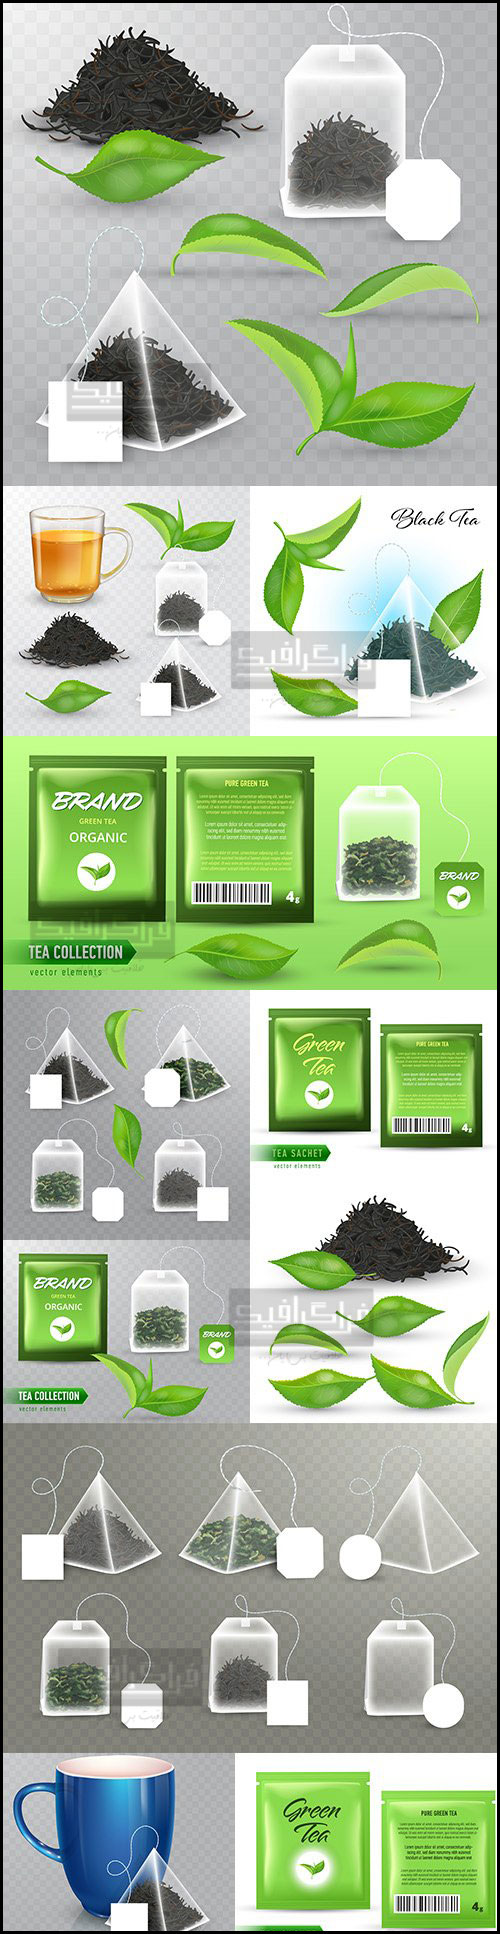 دانلود وکتور های چای کیسه ای سبز و سیاه